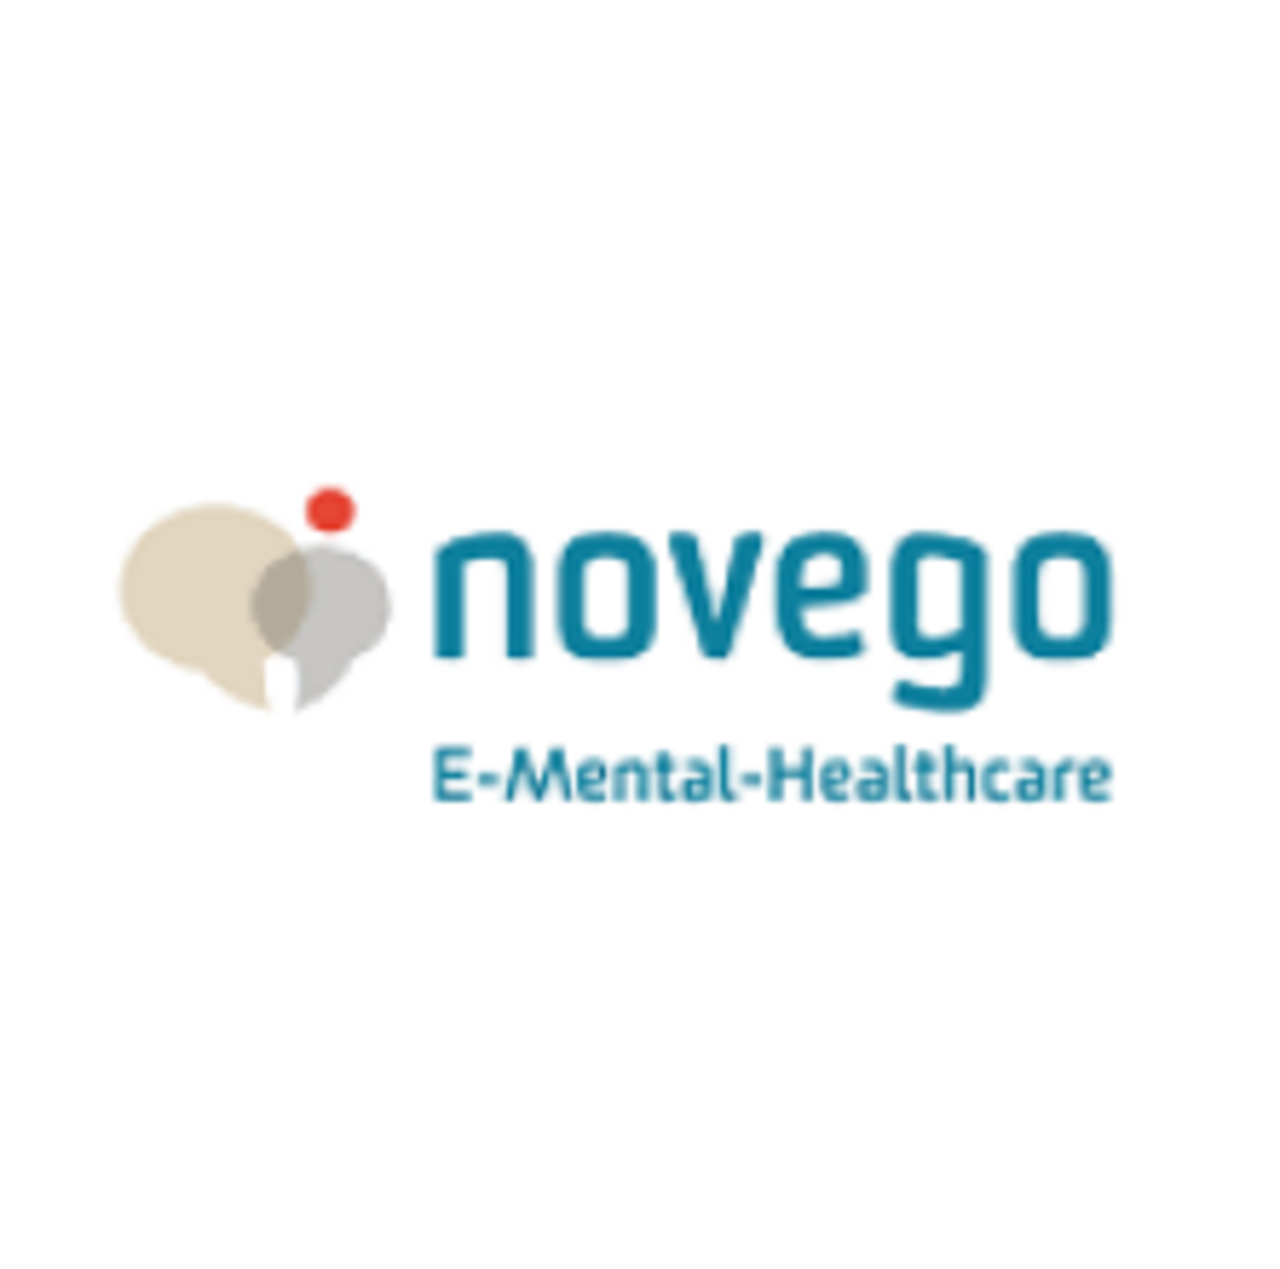 Logo novego E-Mental-Healthcare